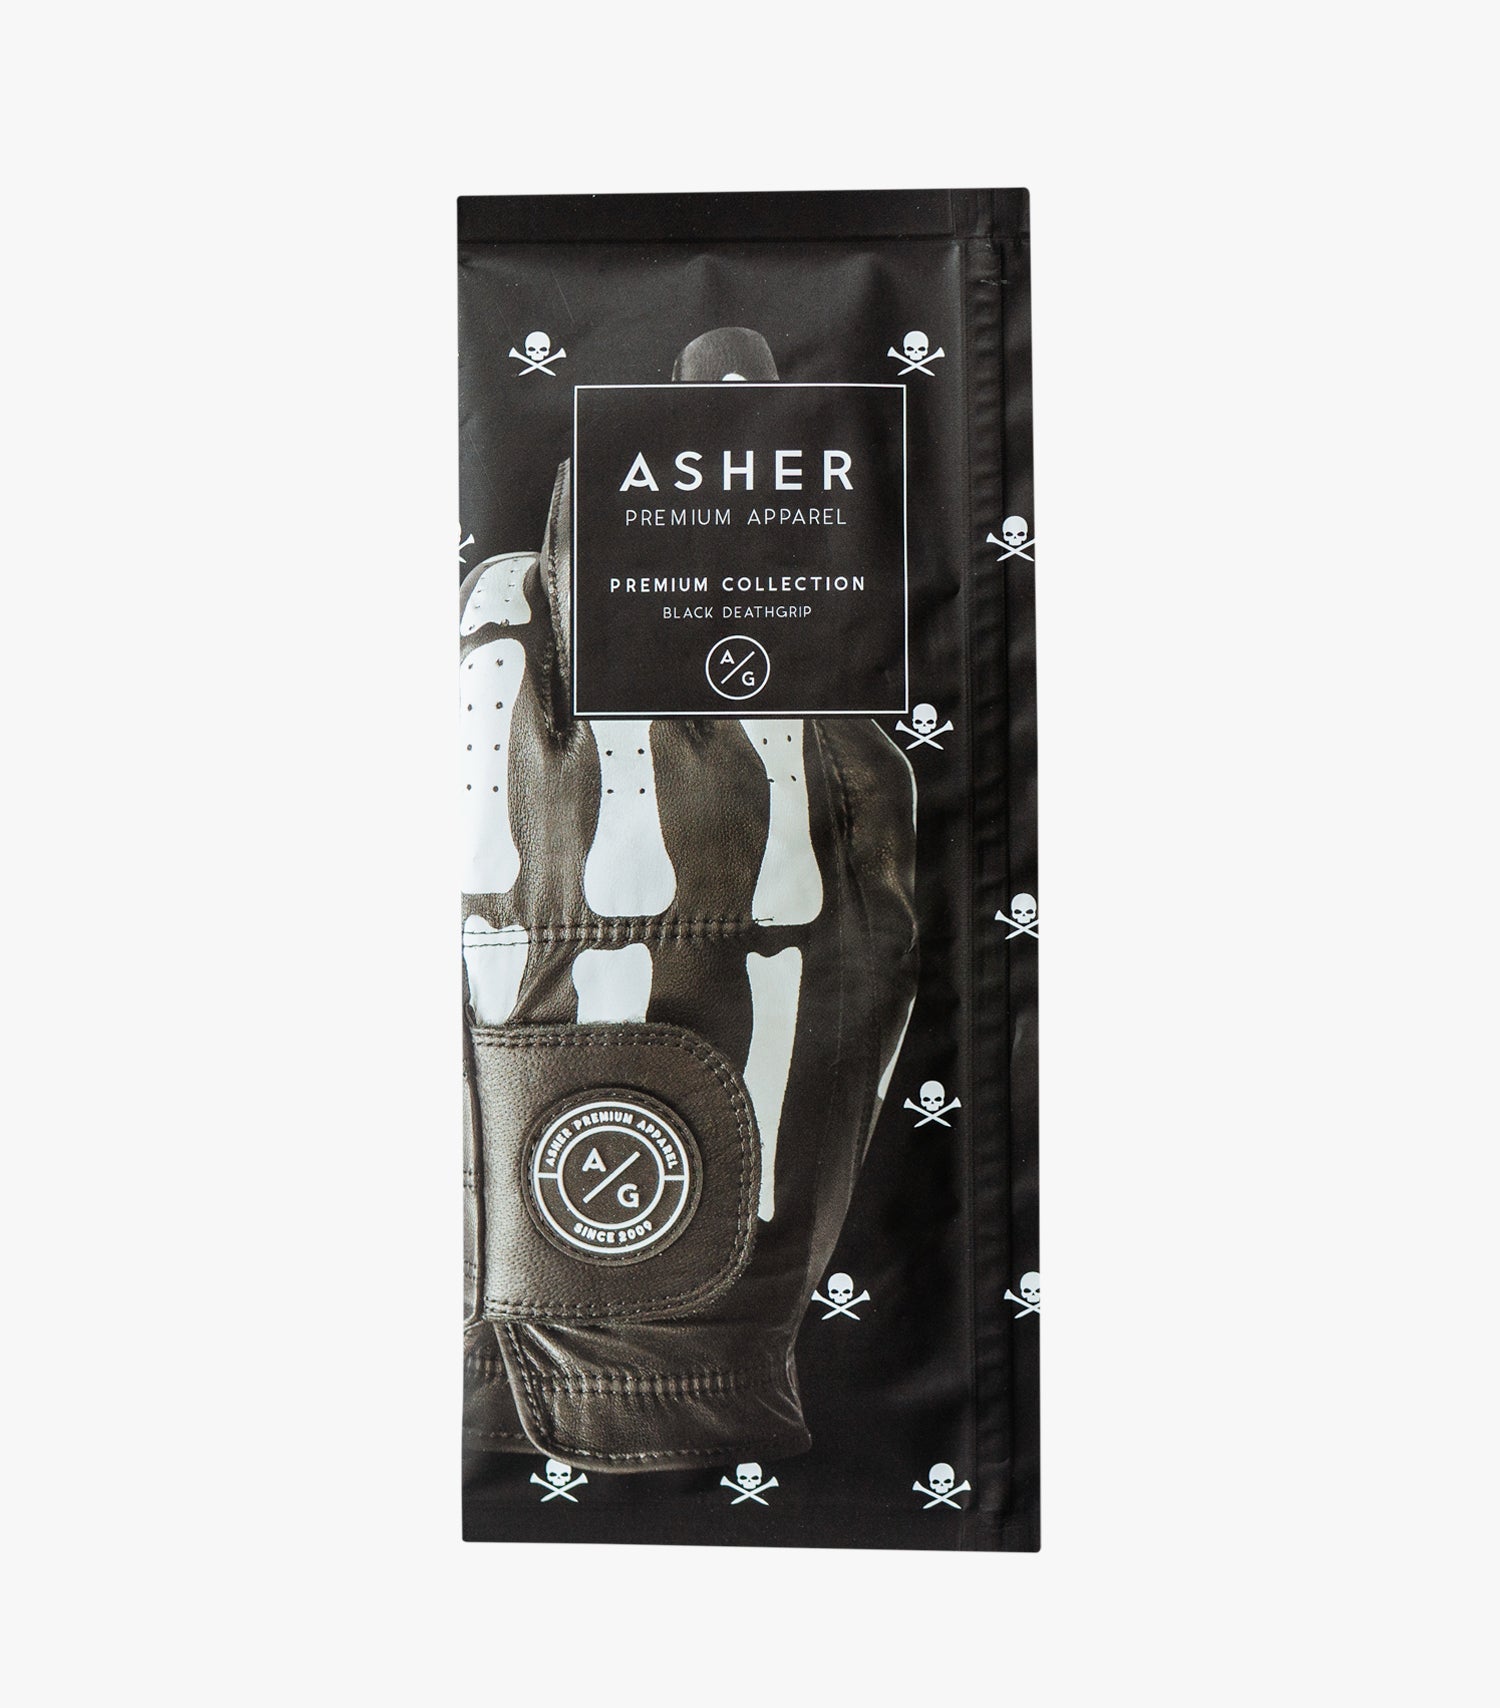 ASHER Black DeathGrip - Premium